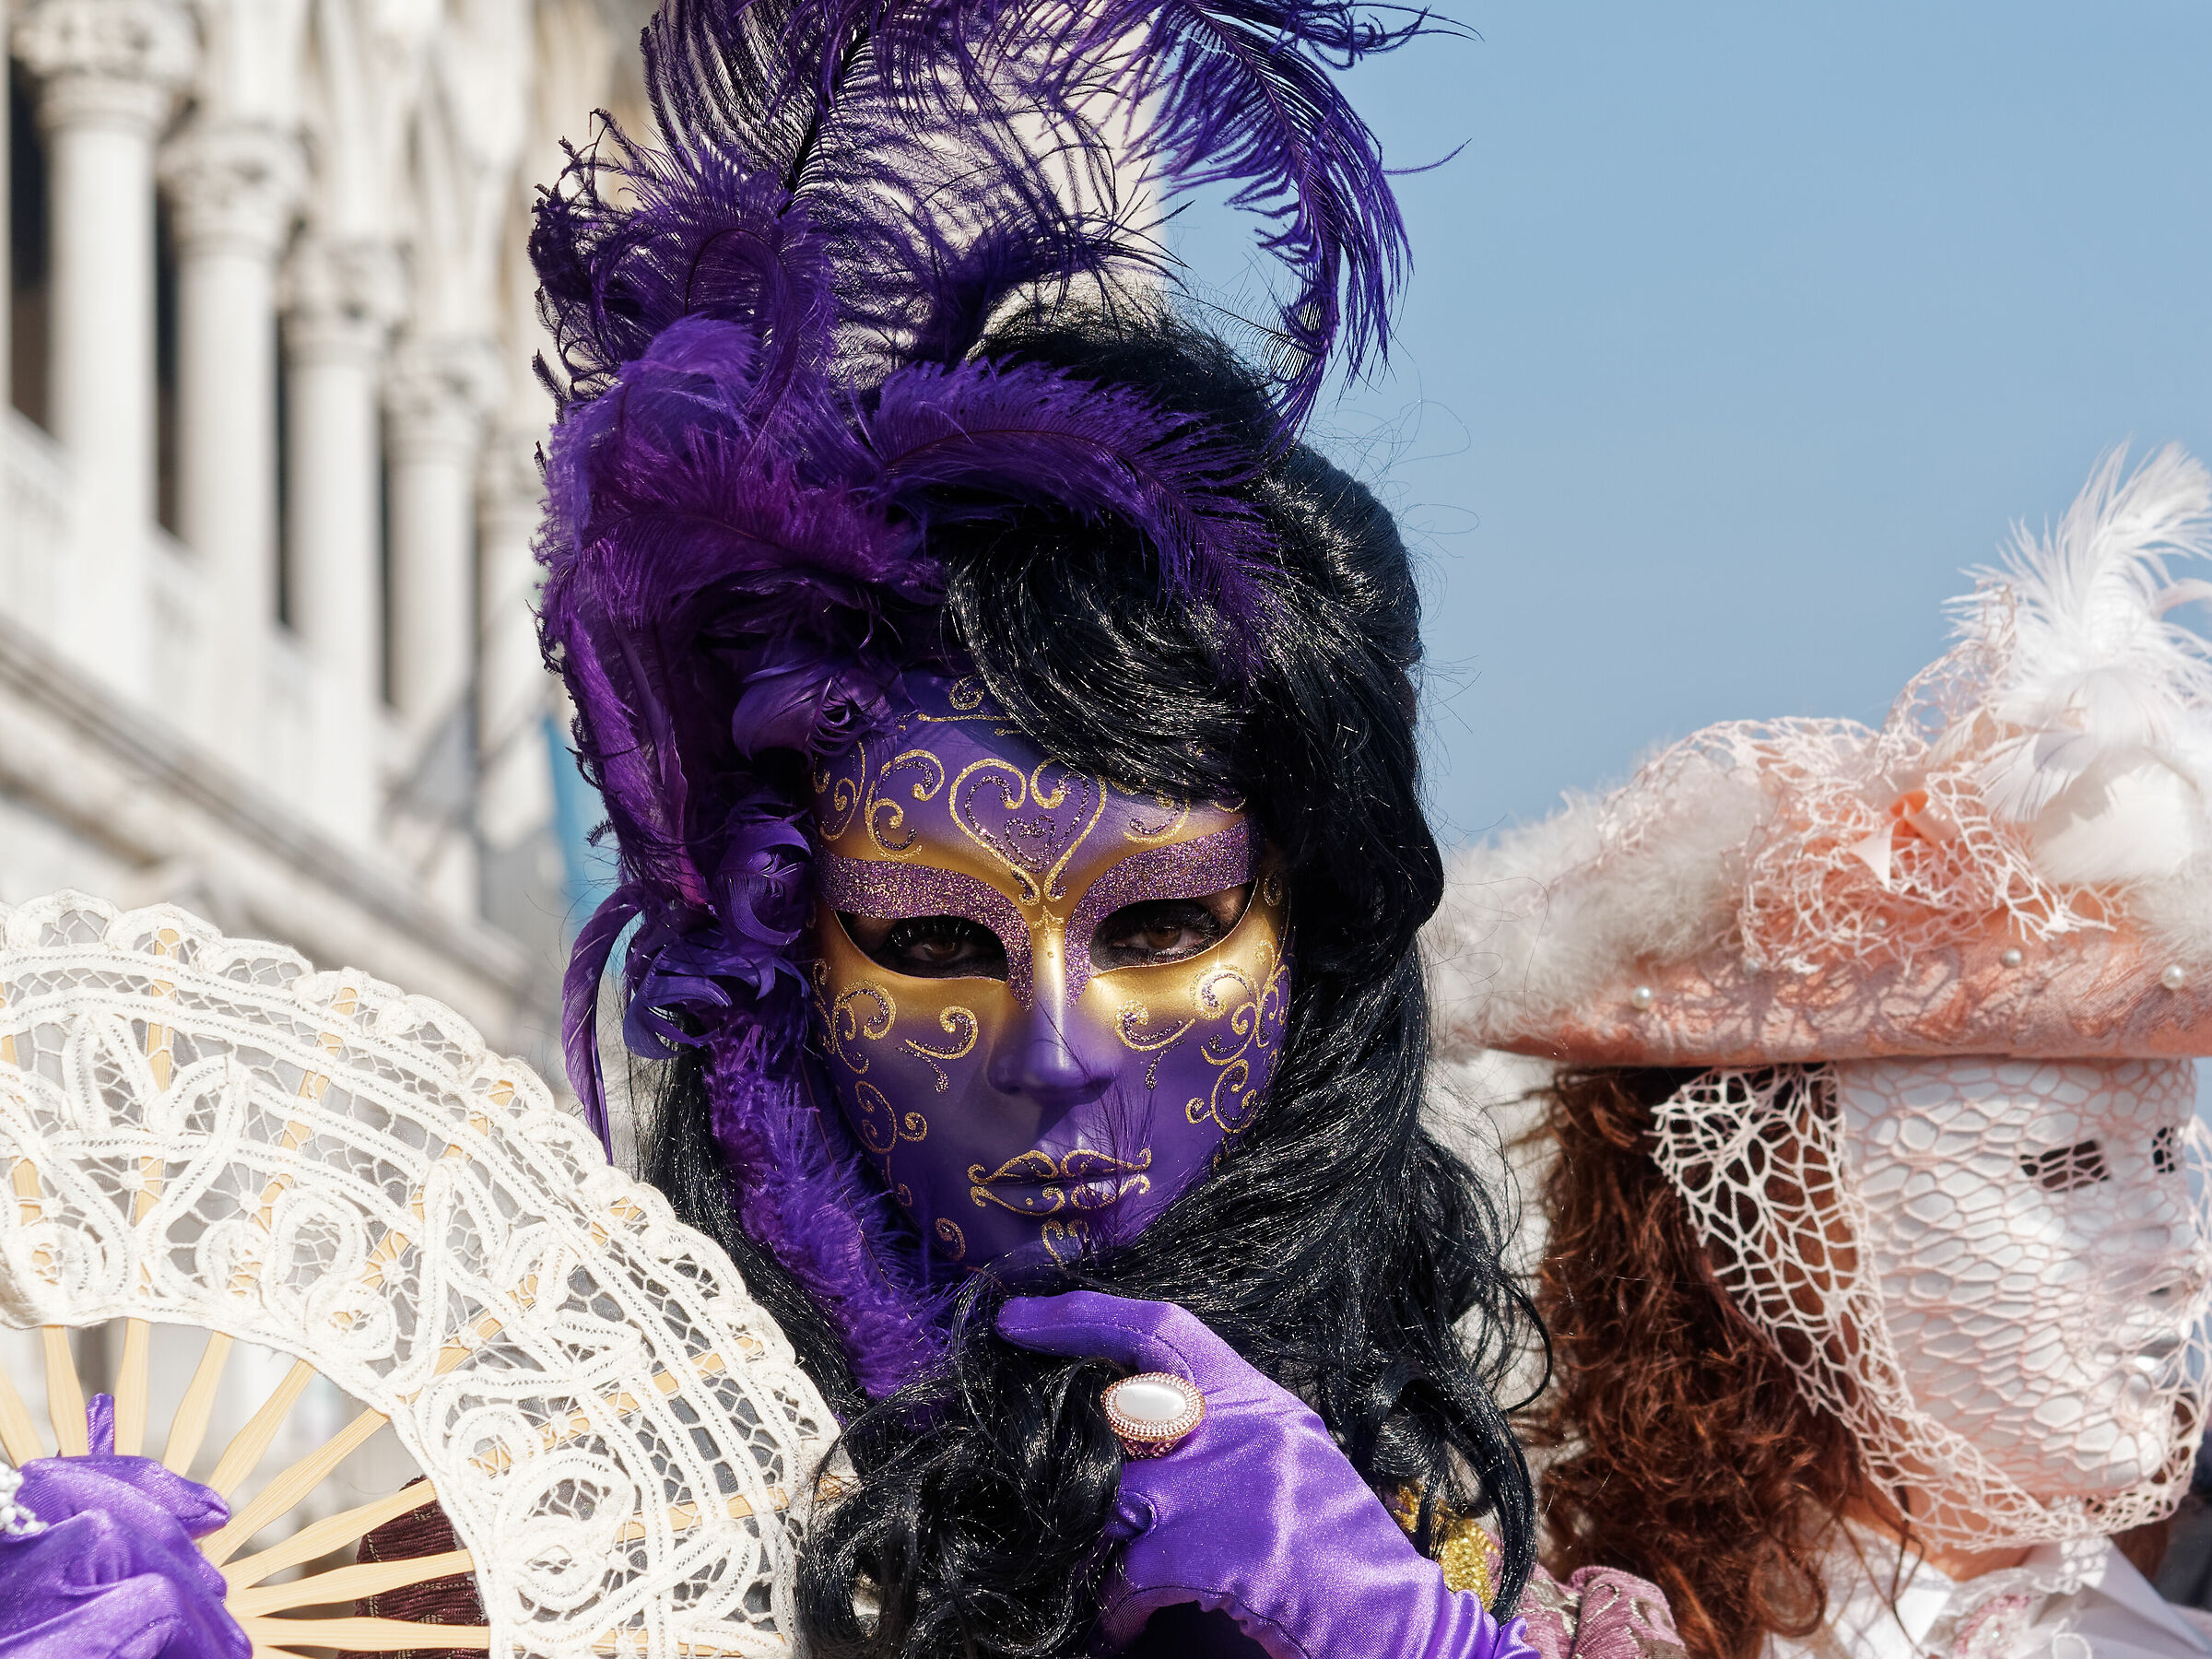 Venezia 2019 mask festival 1...